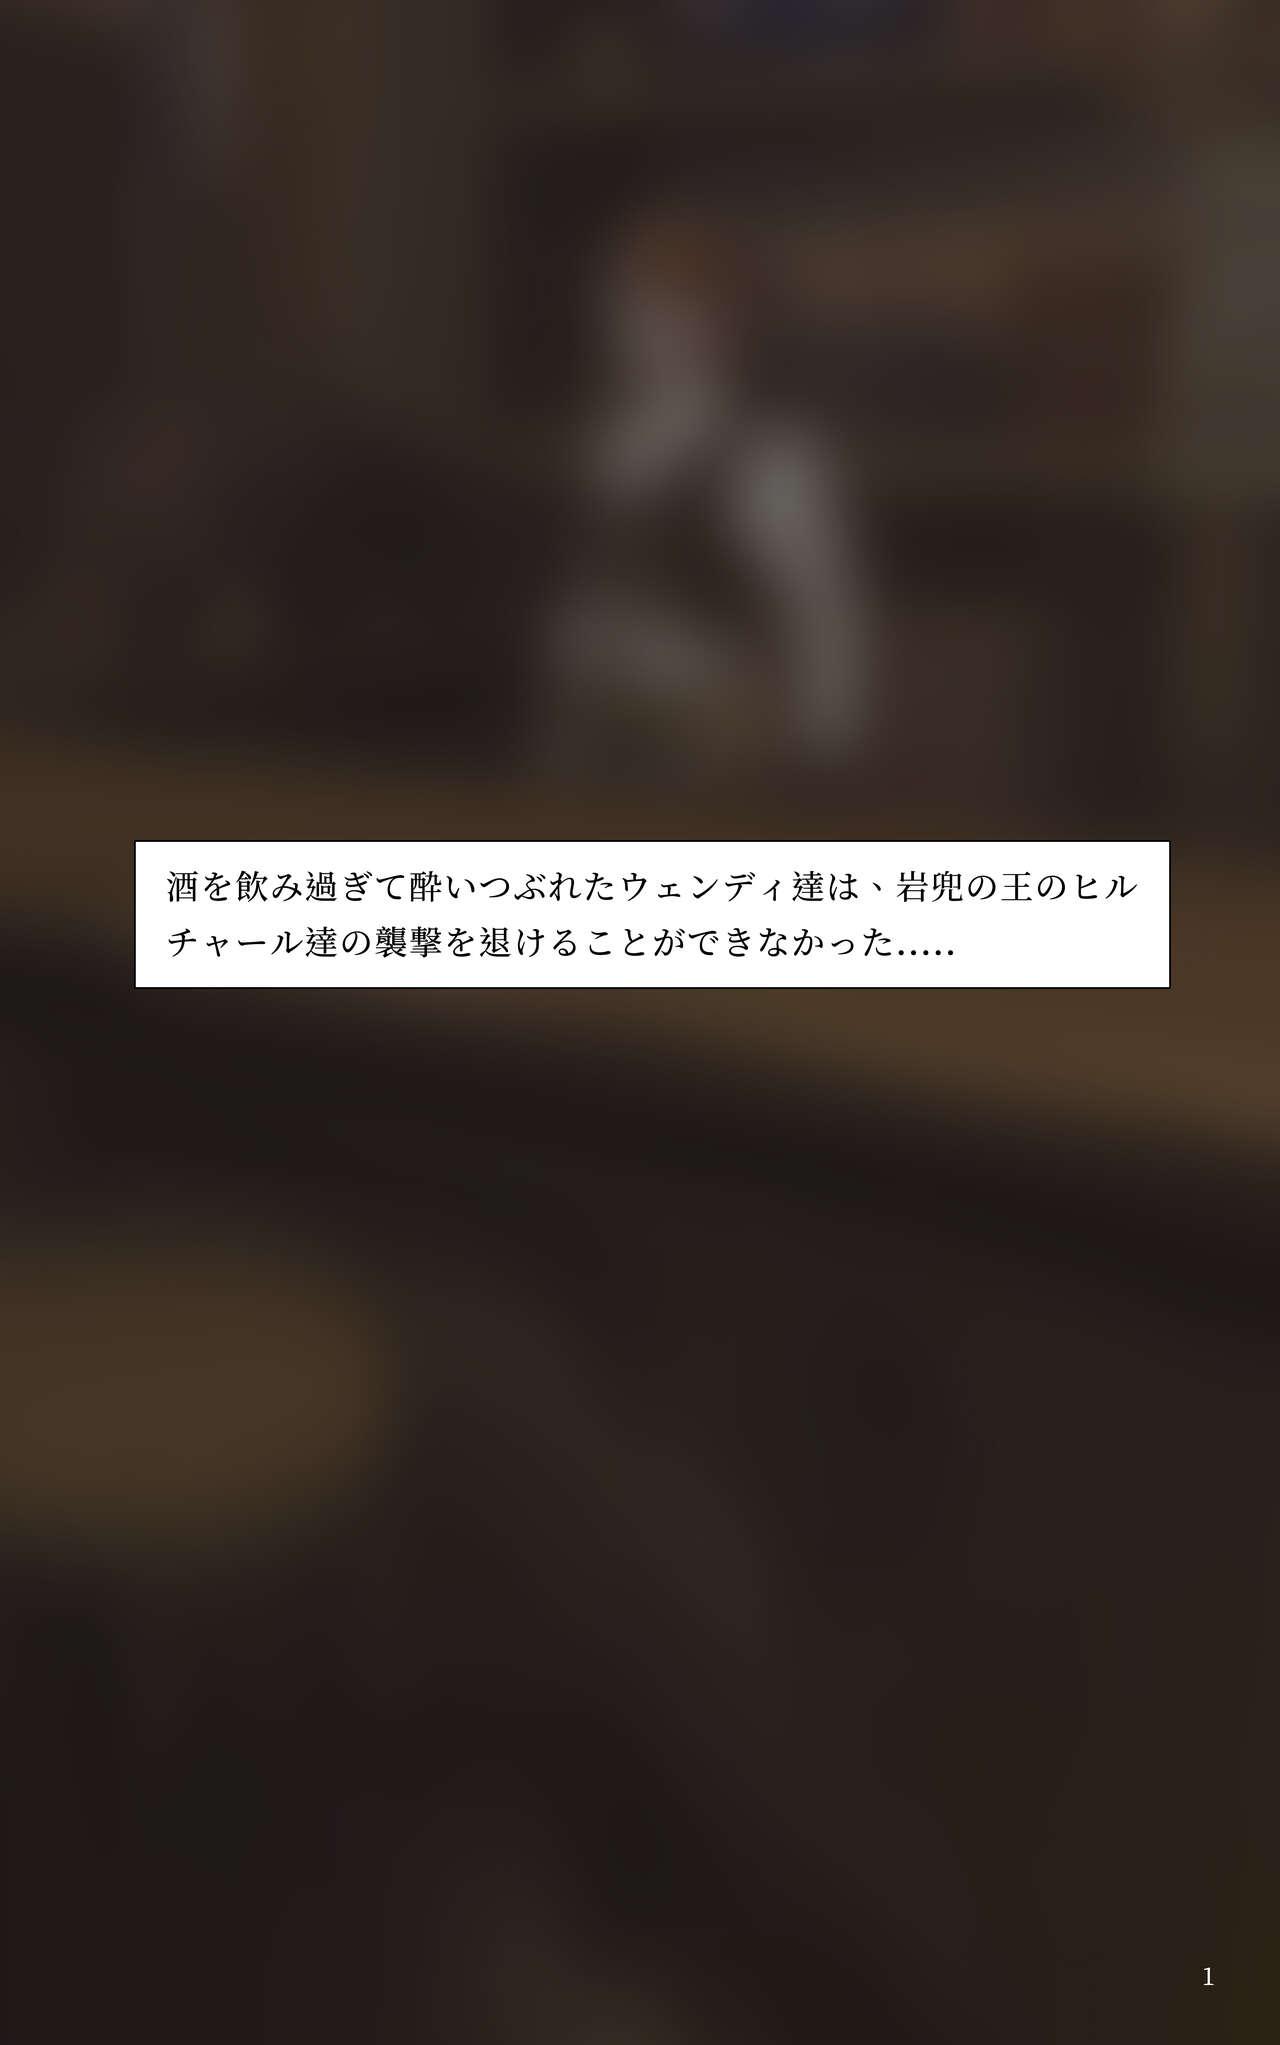 Closeups 蛍とウェンディの敗北 - Genshin impact Tanned - Page 2